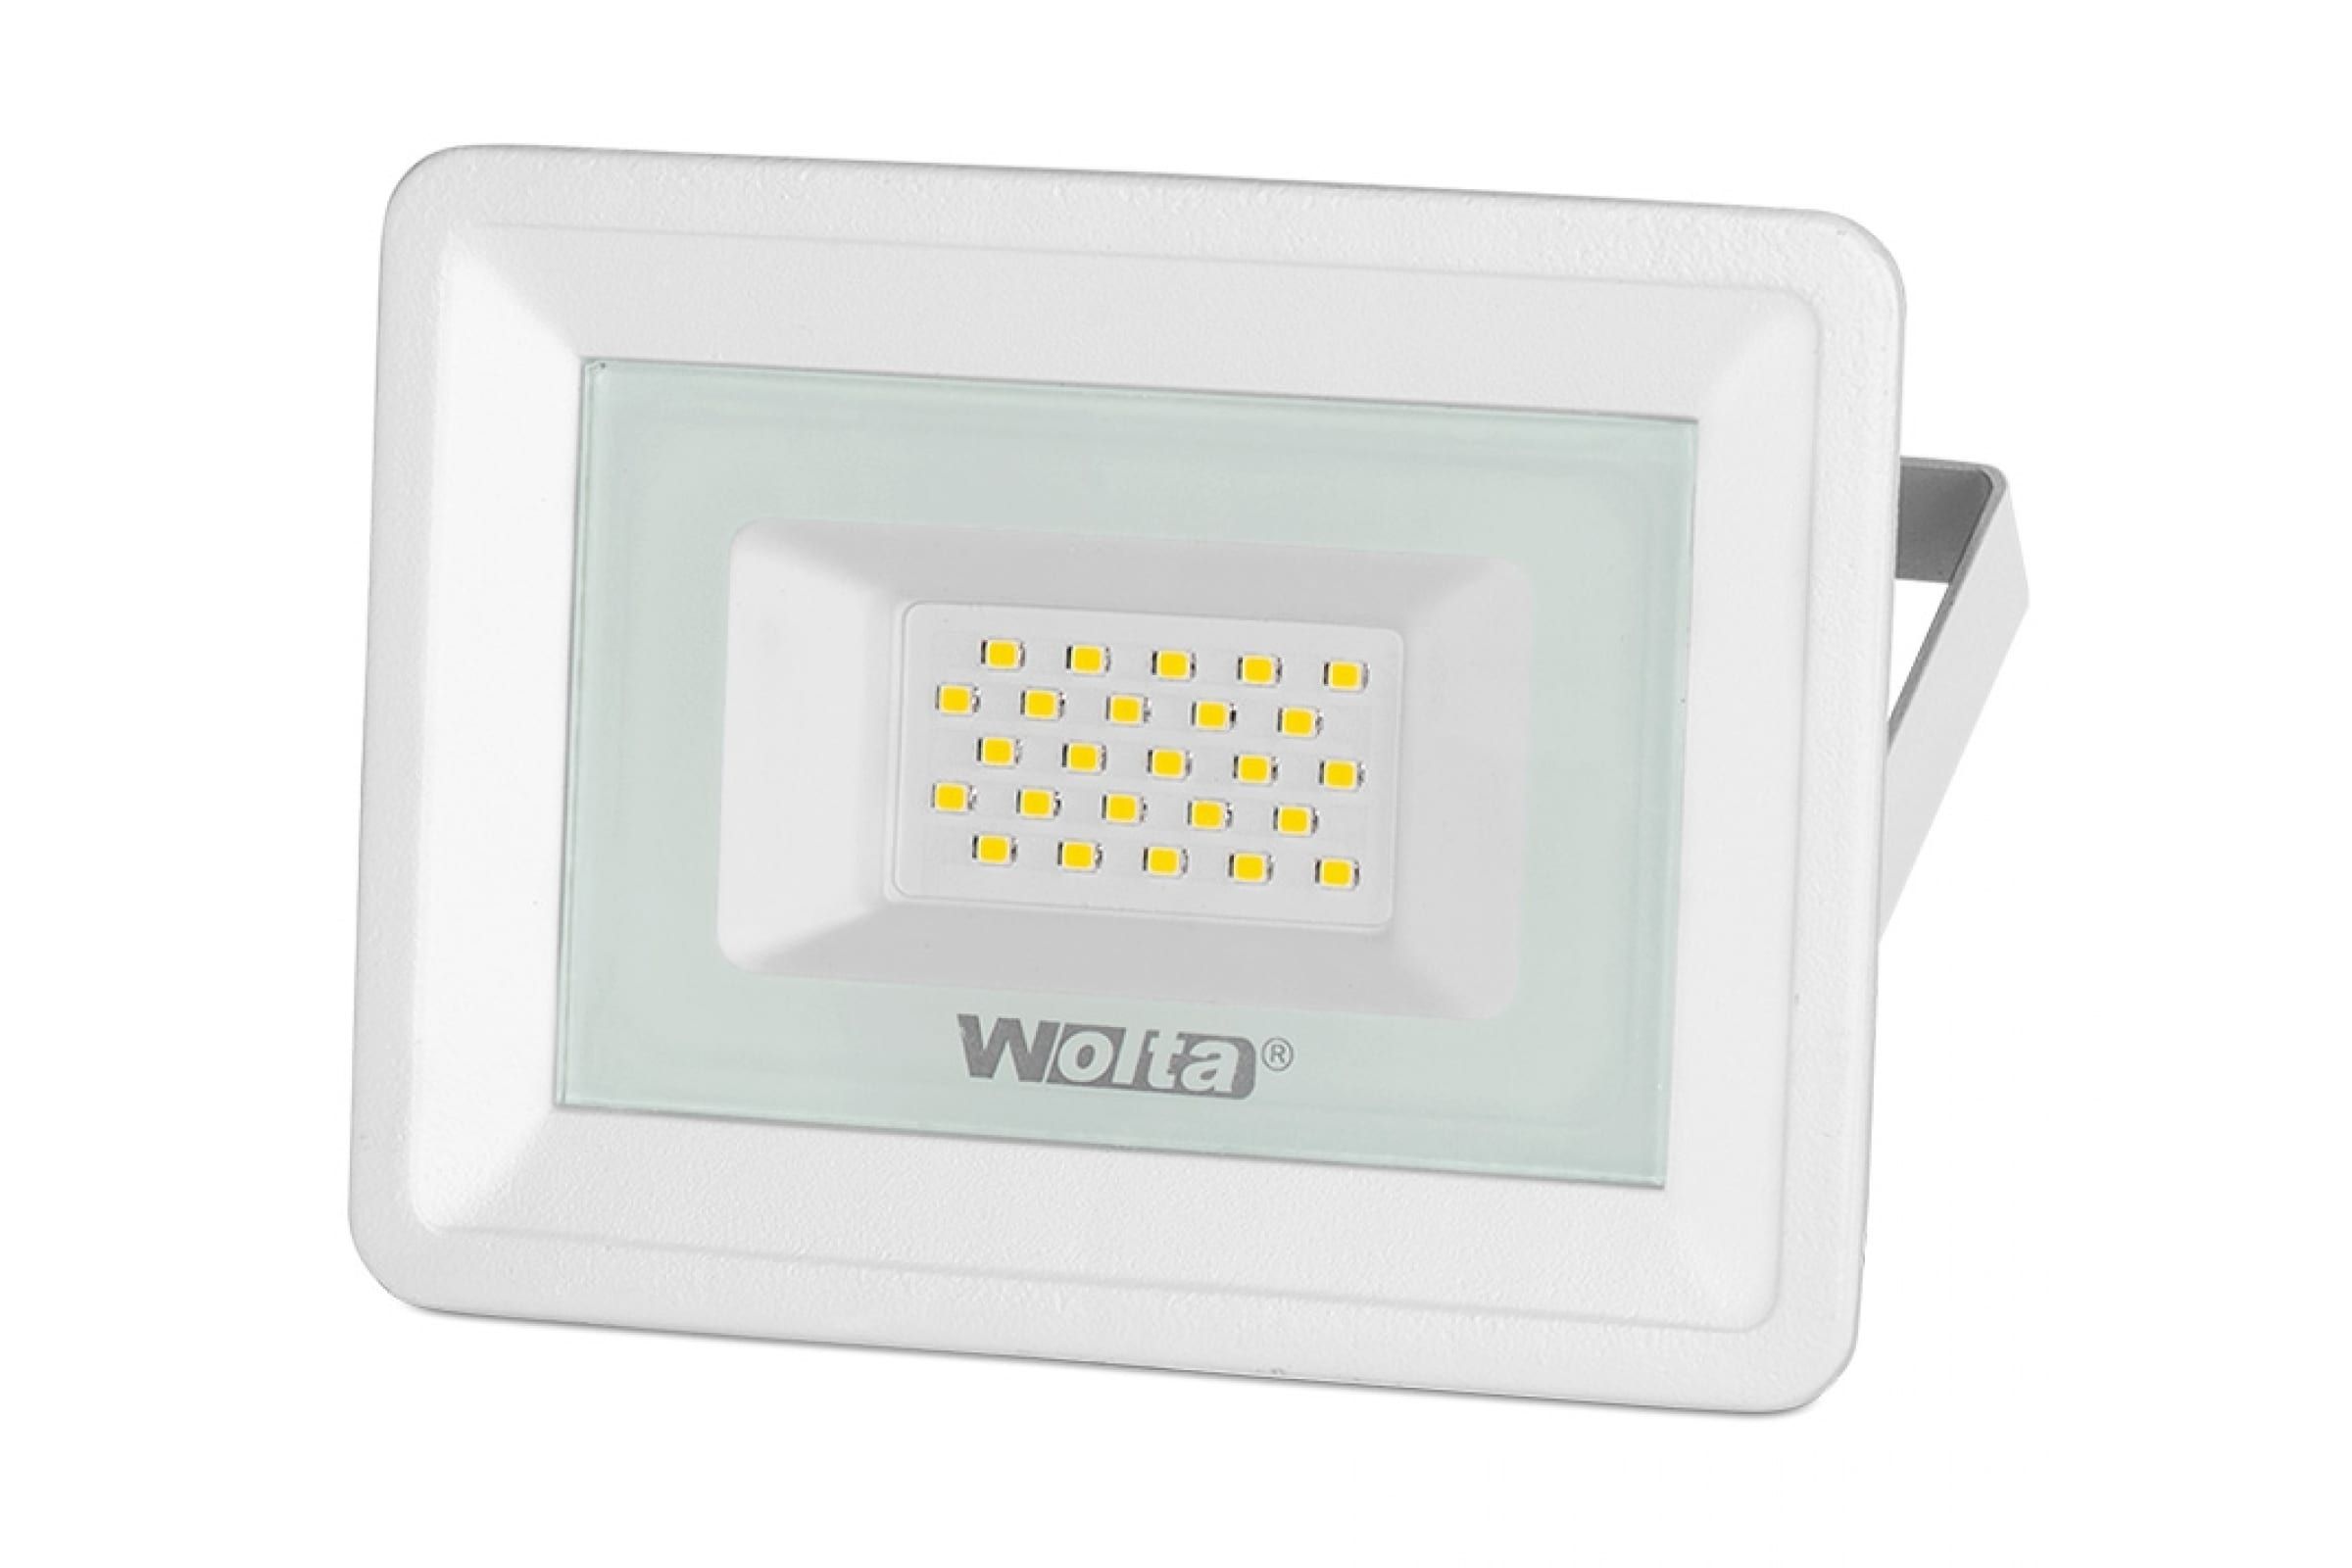 Светодиодный прожектор wfl. Светодиодный прожектор WFL-50w/06, 5500k, 50 w SMD, IP 65. Светодиодный прожектор Wolta WFL-20w/06. Светодиодный прожектор Wolta 5500k, 20 w SMD, IP 65, WFL-20w/06. Прожектор светодиодный 100 Вт Wolta WFL-100w/06.